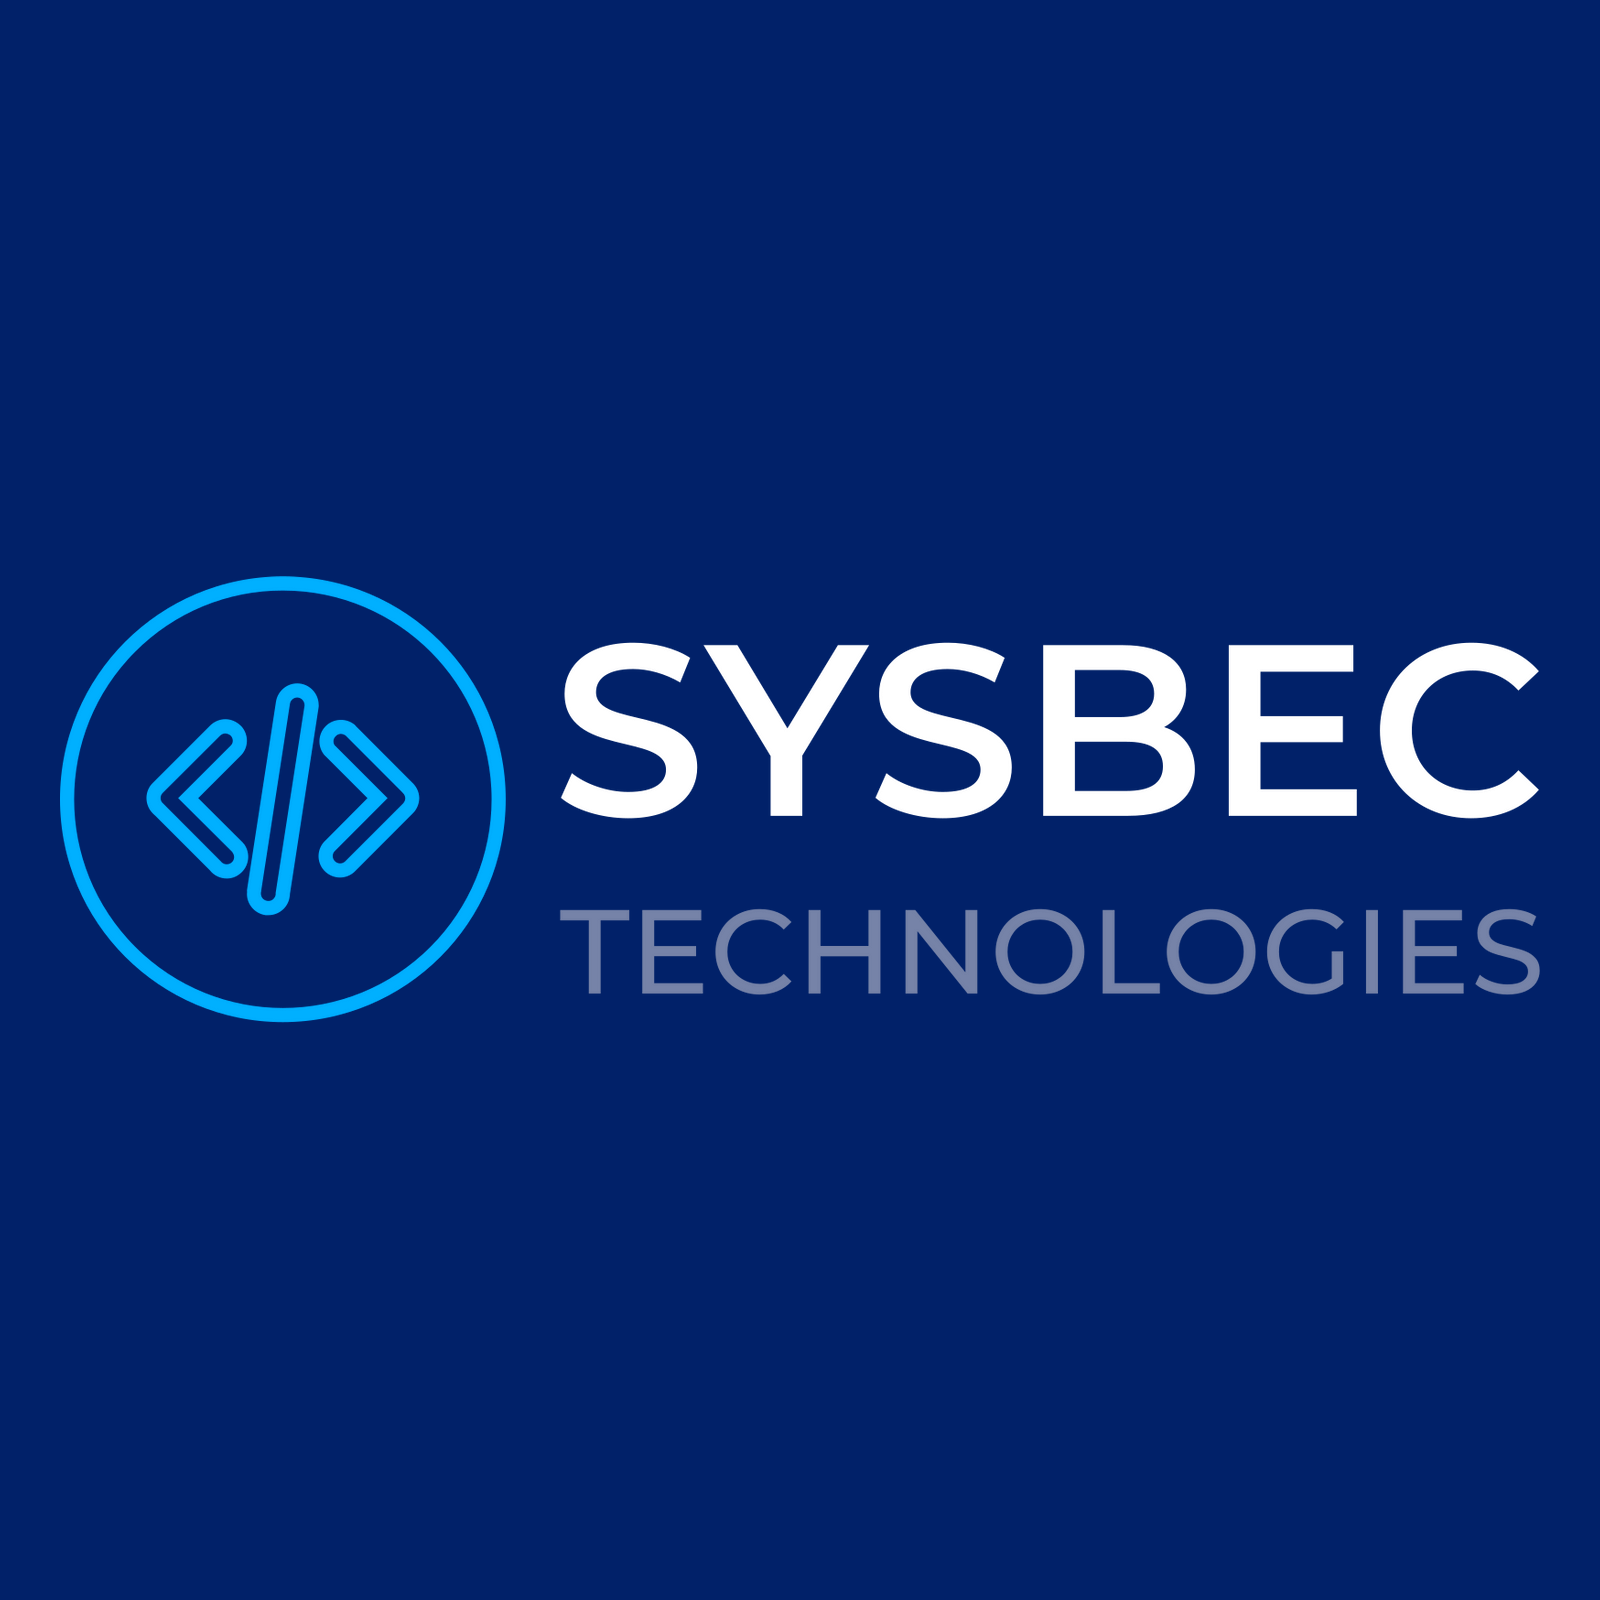 SYSBEC Technologies à Montréal offre des produits et service dans la région de Montréal tels que : Informatique, Développement logiciel, Agence web , Design web, Graphisme et notre répertoire des entreprises québécoises est fier de présenter SYSBEC Technologies à Montréal en Montréal.